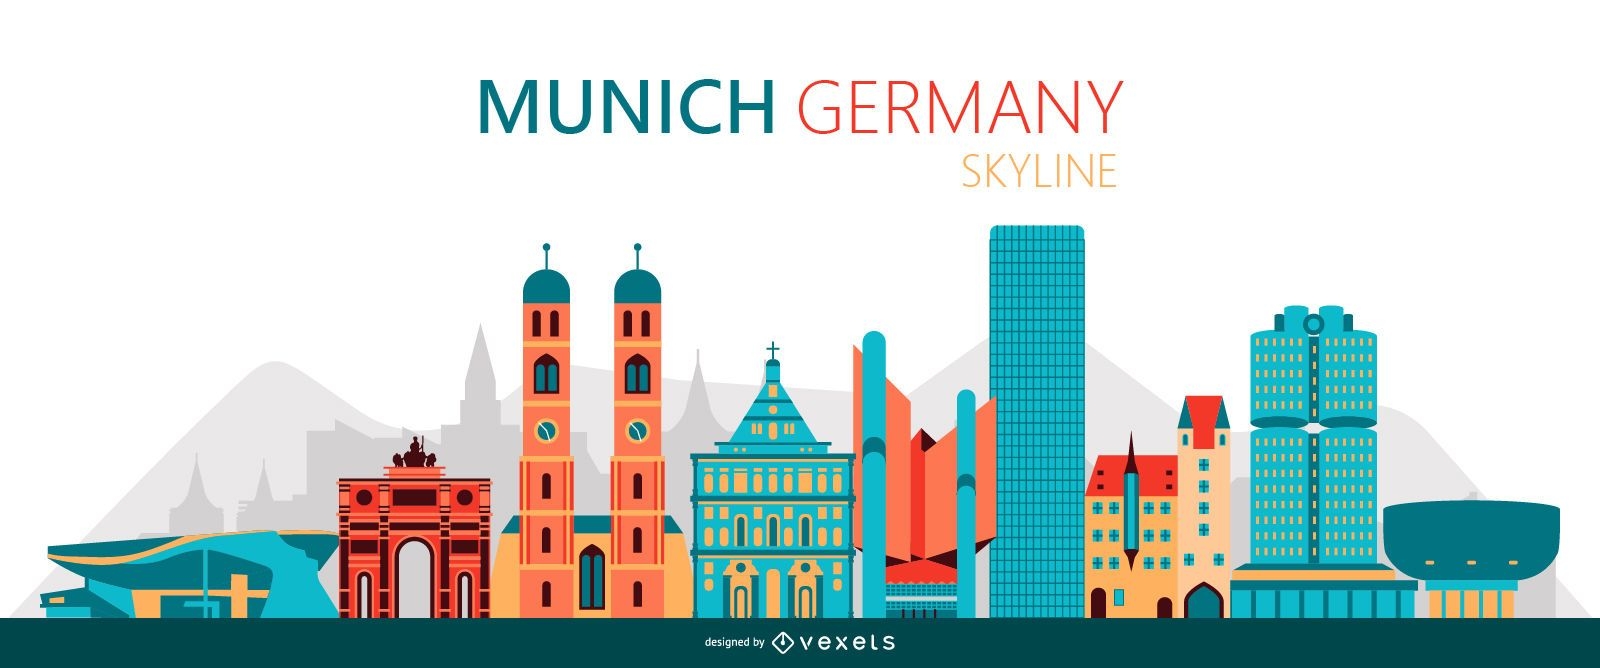 Munich Skyline Illustration Vector Download